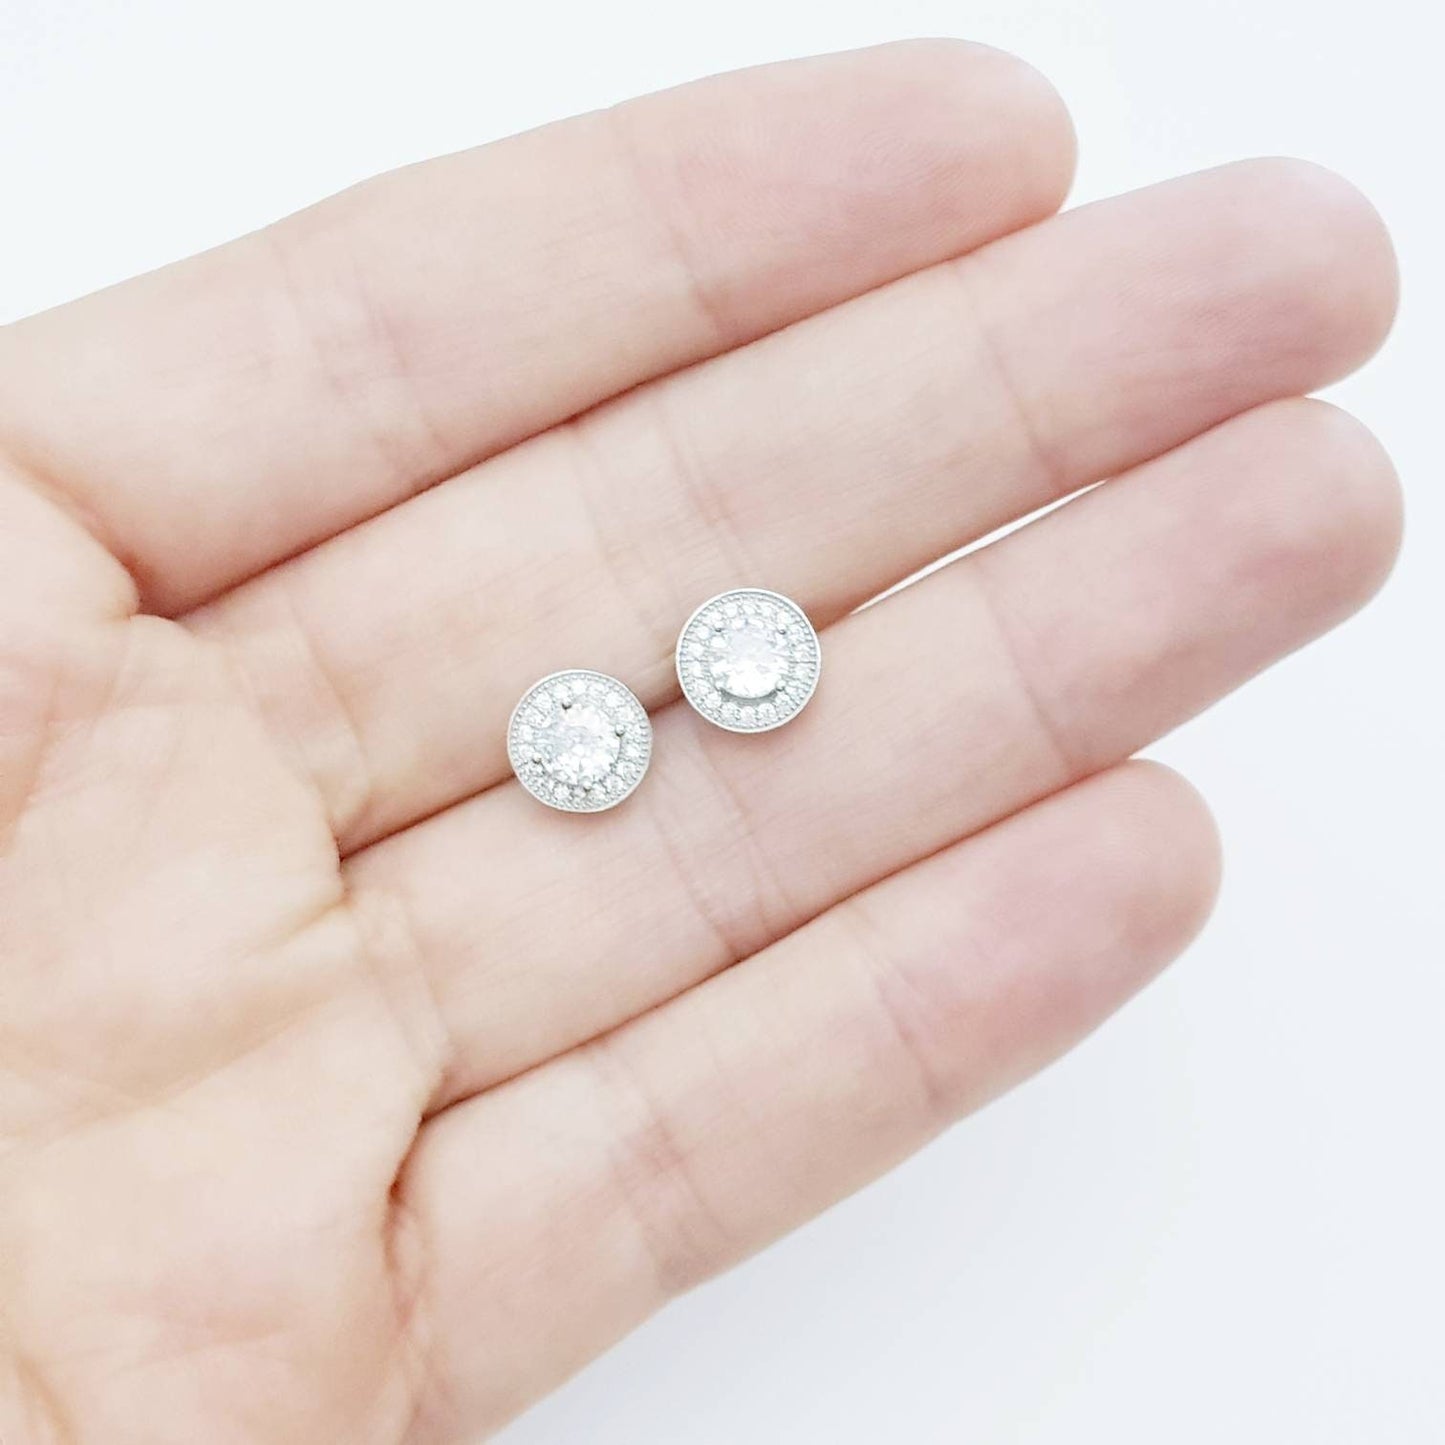 Silver Halo Earrings, round stud earrings, faux diamond earrings for women with millgrain edge